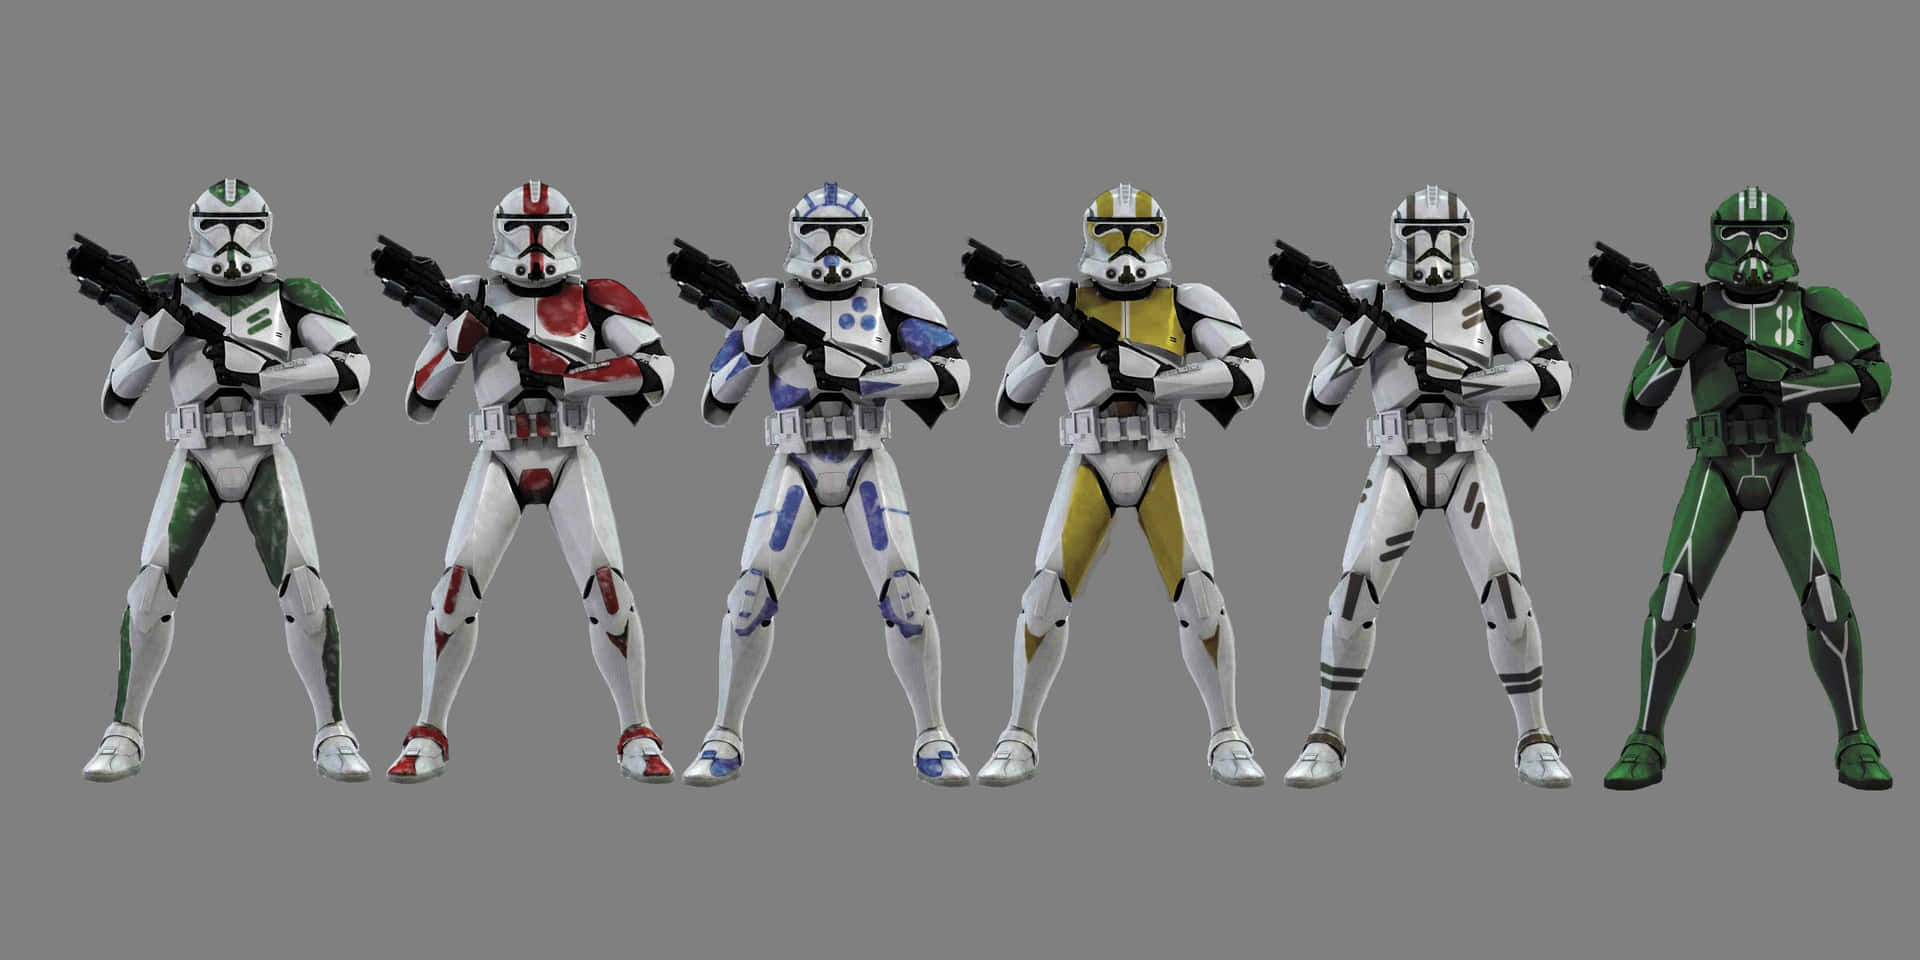 Machensie Sich Bereit Für Den Kampf Mit Diesen Clone Troopers Aus Dem Star Wars Universum! Wallpaper